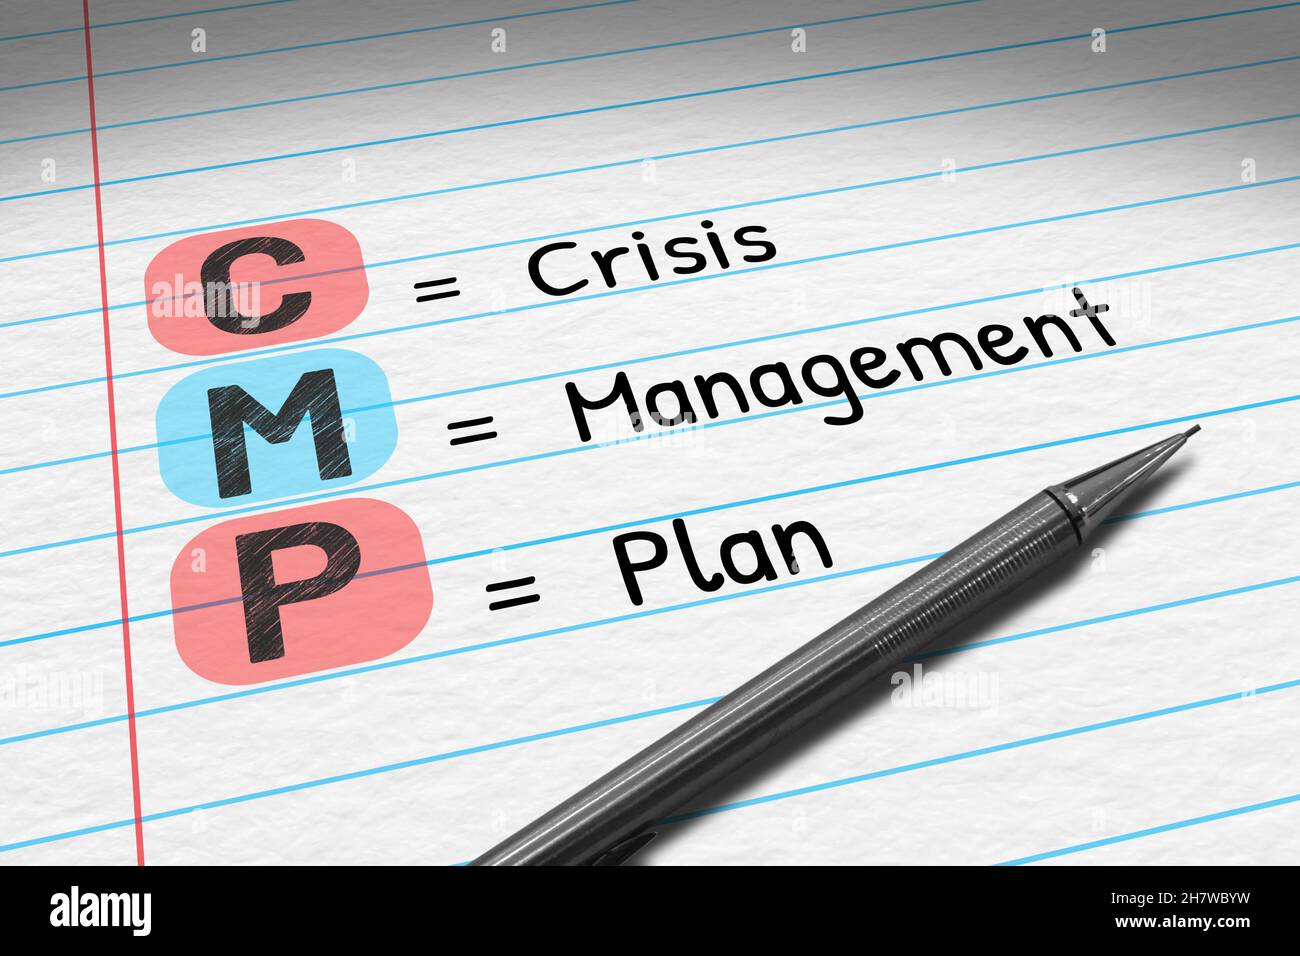 CMP - Plan de gestion de crise.Illustration 3D de l'acronyme commercial sur le bloc-notes. Banque D'Images